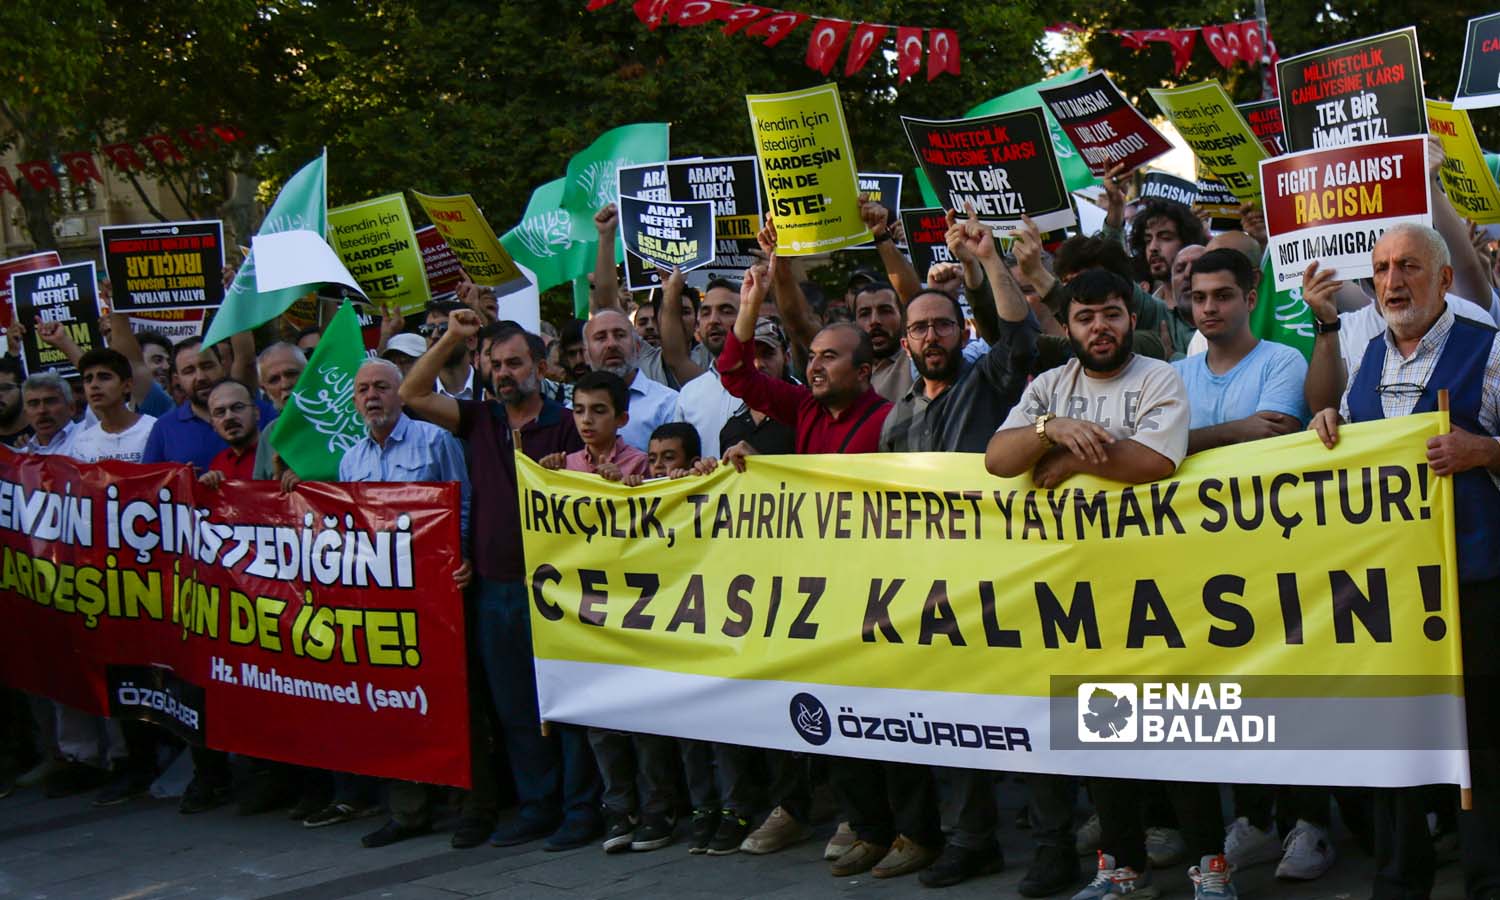 ناشطون يرفعون لوحات تندد بالعنصرية، وكتب عاللوحة الصفراء عبارة"من يحرض على العنصرية وينشر الكراهية فهو مجرم، ولا ينبغي أن يبقى دون عقاب"- اسطنبول 16 من أيلول 2023 (عنب بلدي- يوسف حمّص)